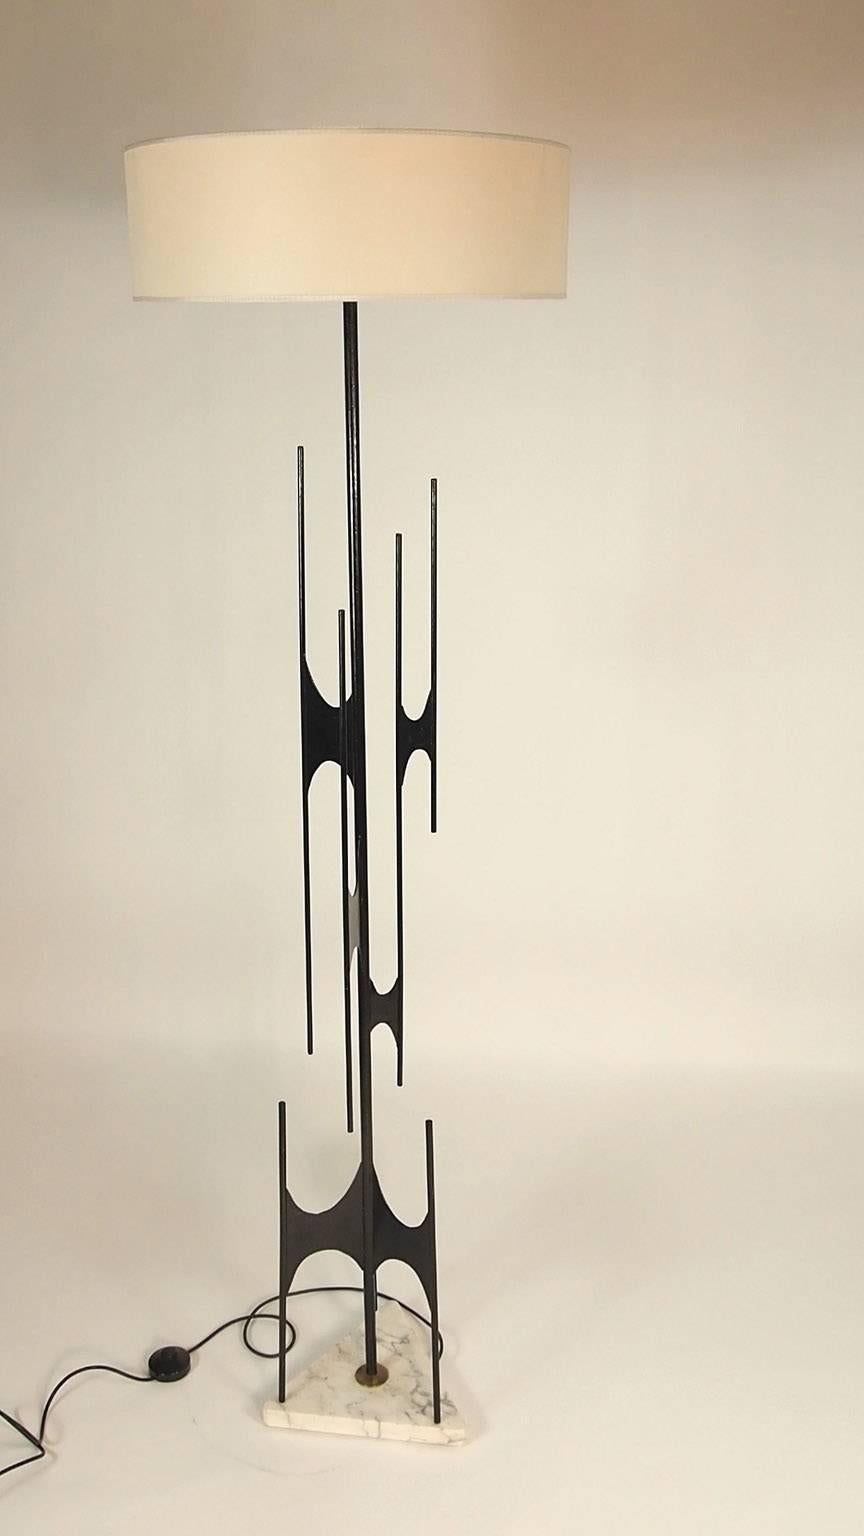 Italian Rare Floor Lamp Designed by Maurizio Tempestini for X Triennale in Milano, 1954